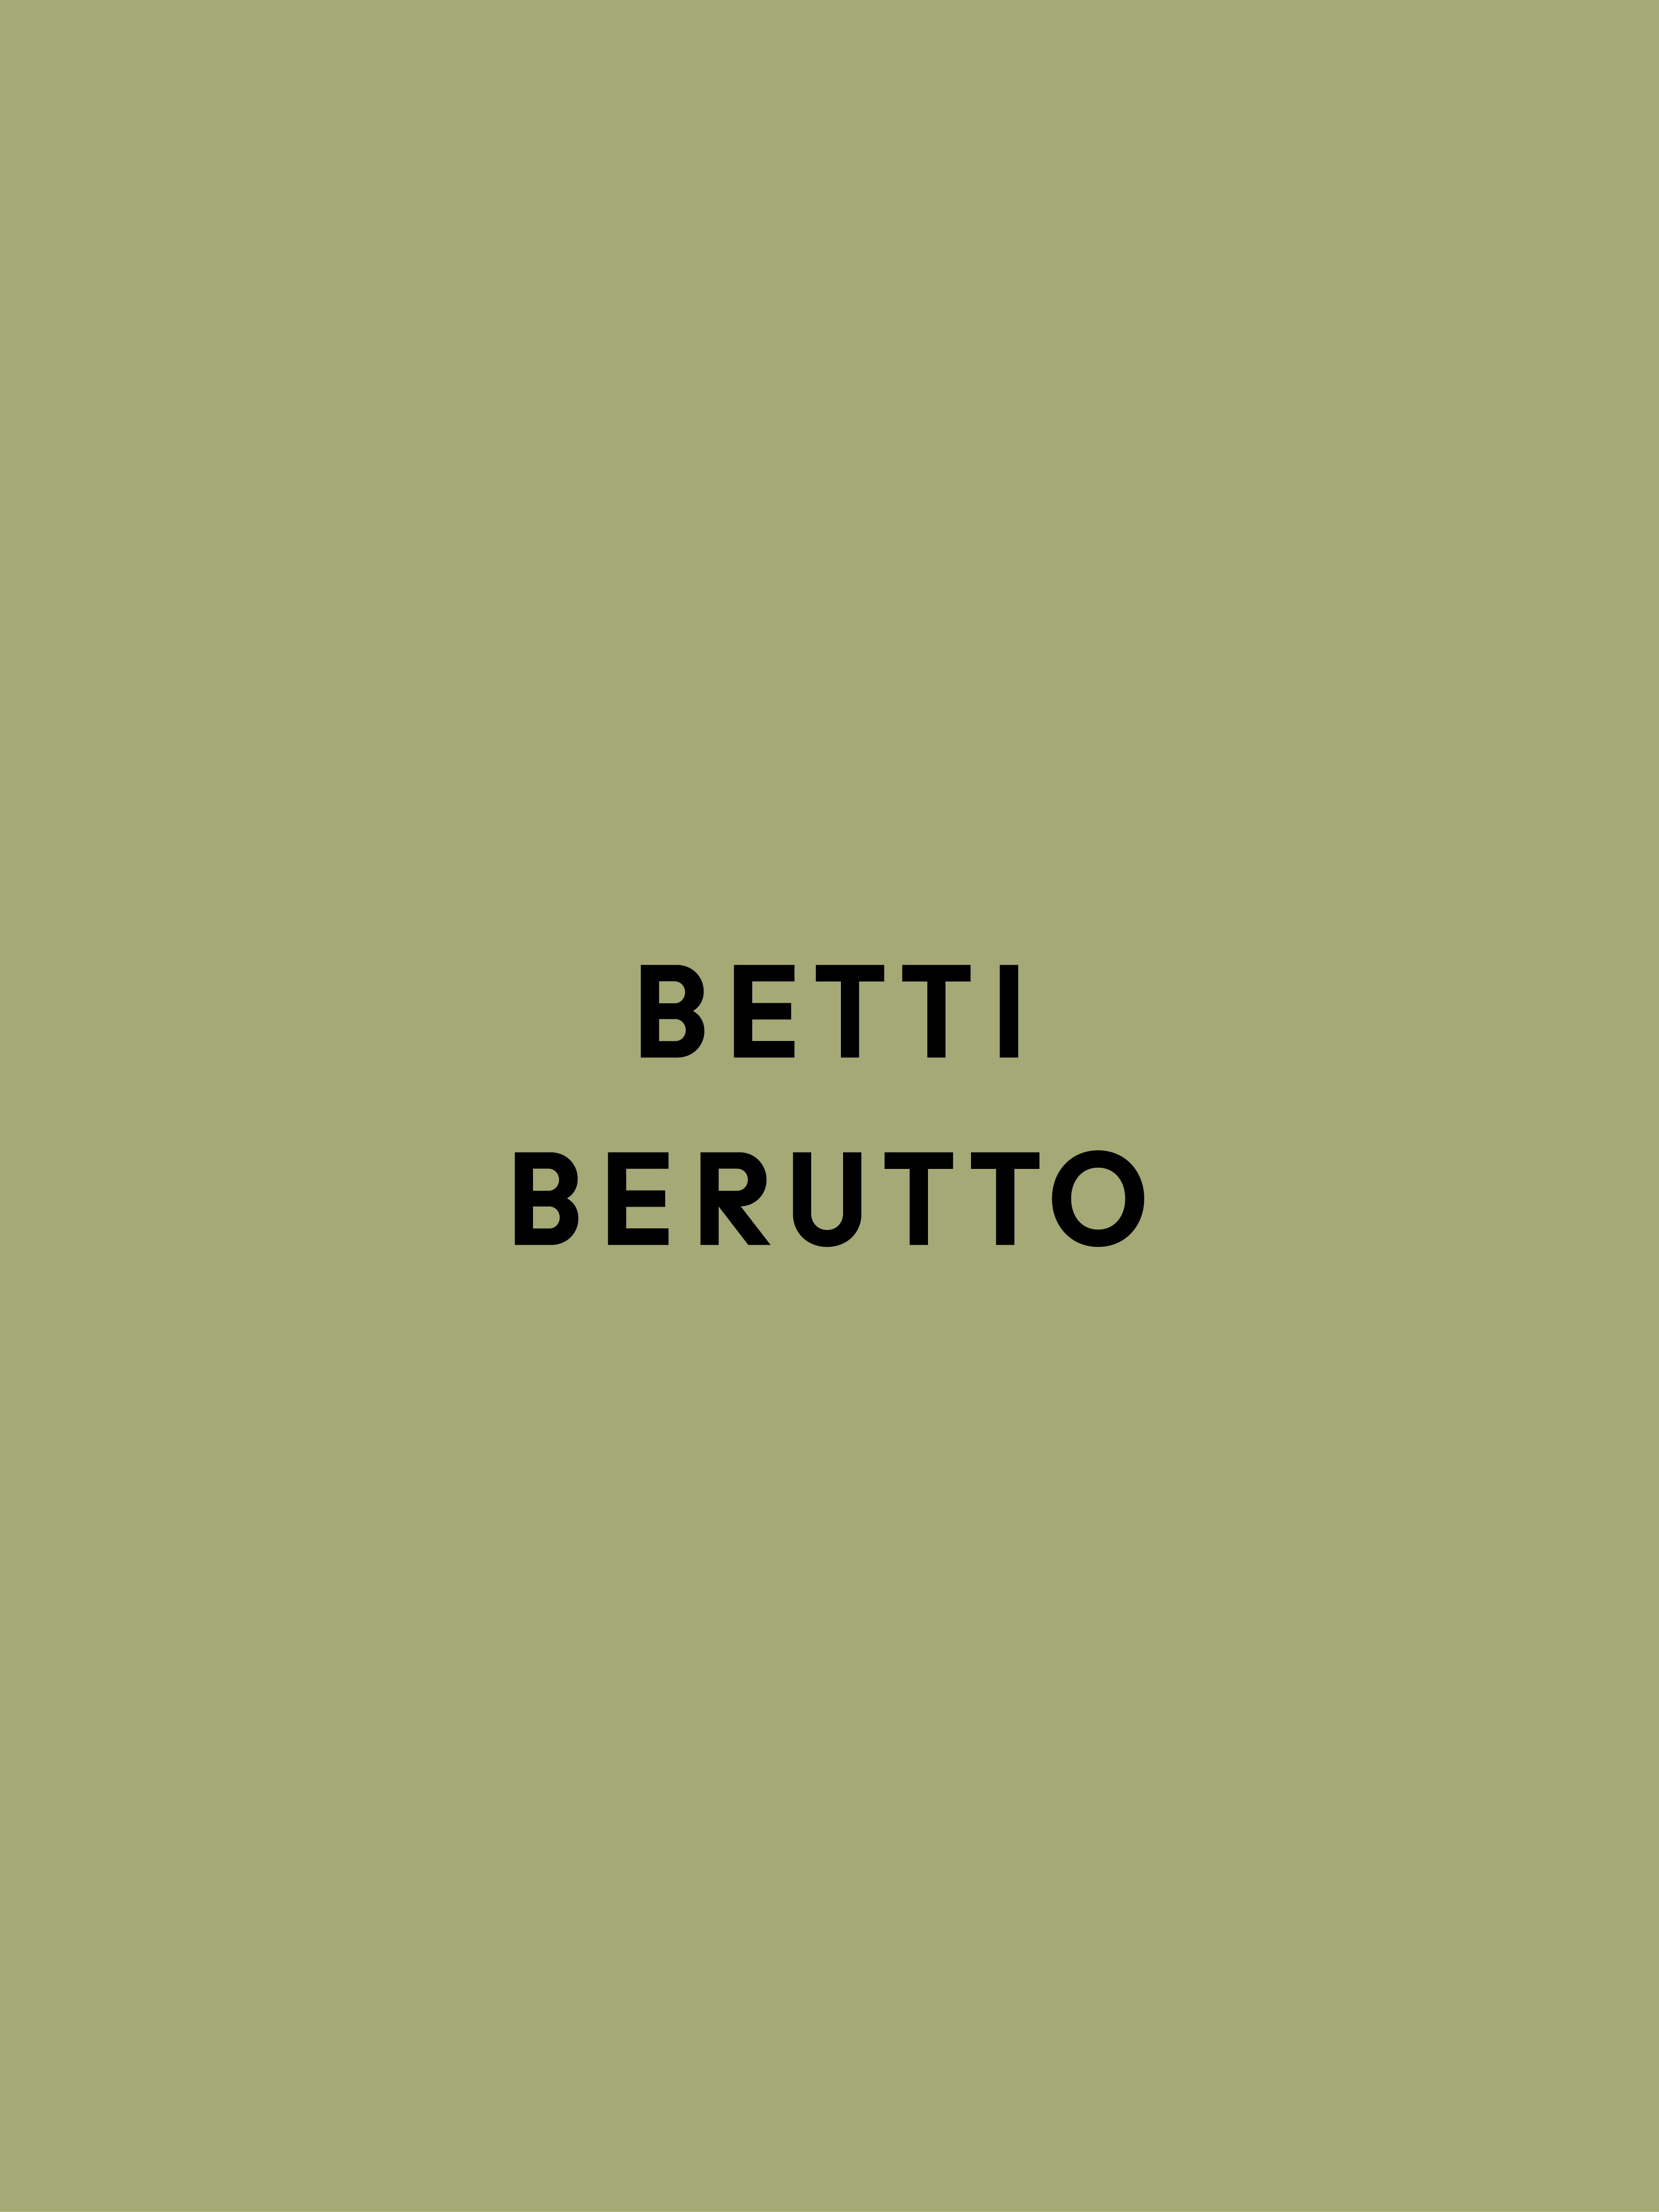 VVORKROOM - Betti Berutto